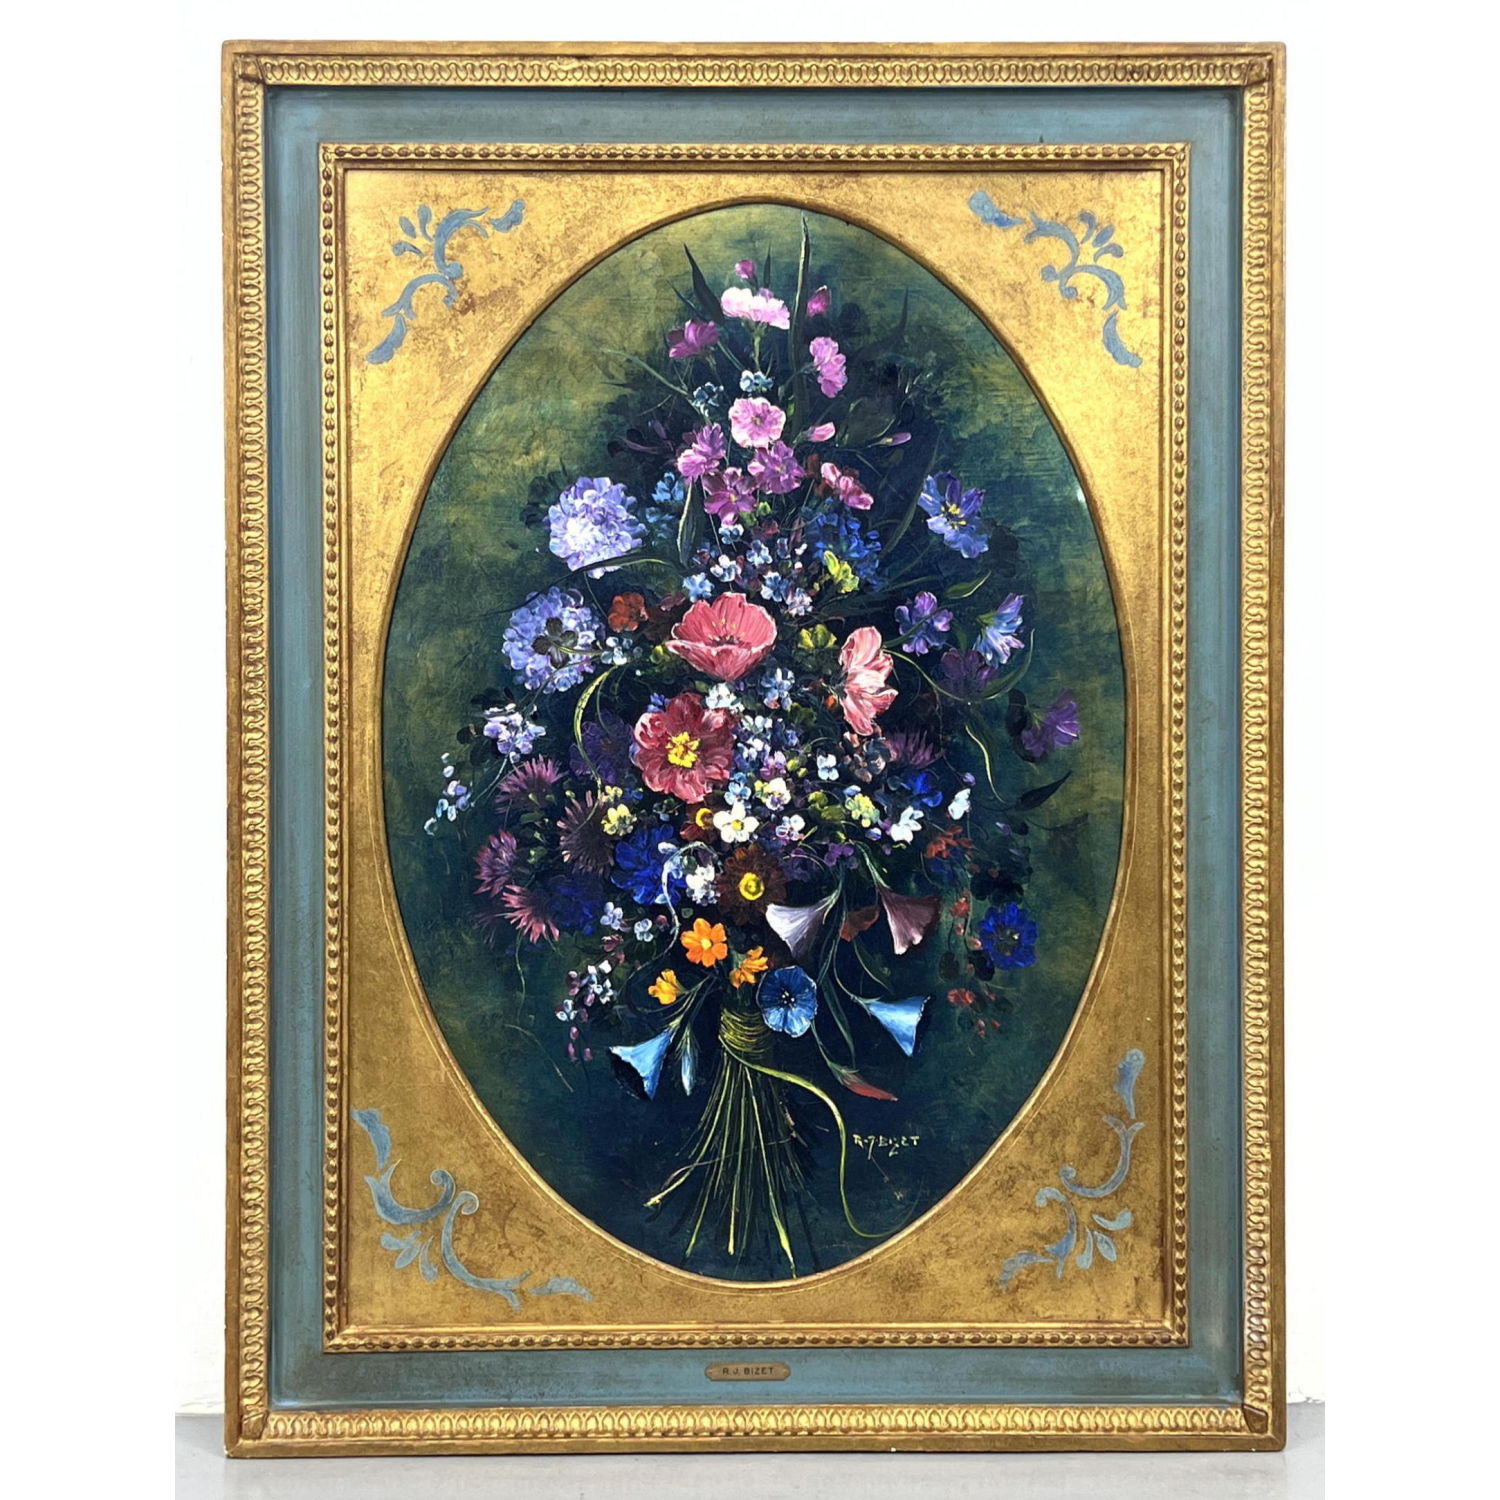 R. J. BIZET Oval Floral Bouquet Painting.